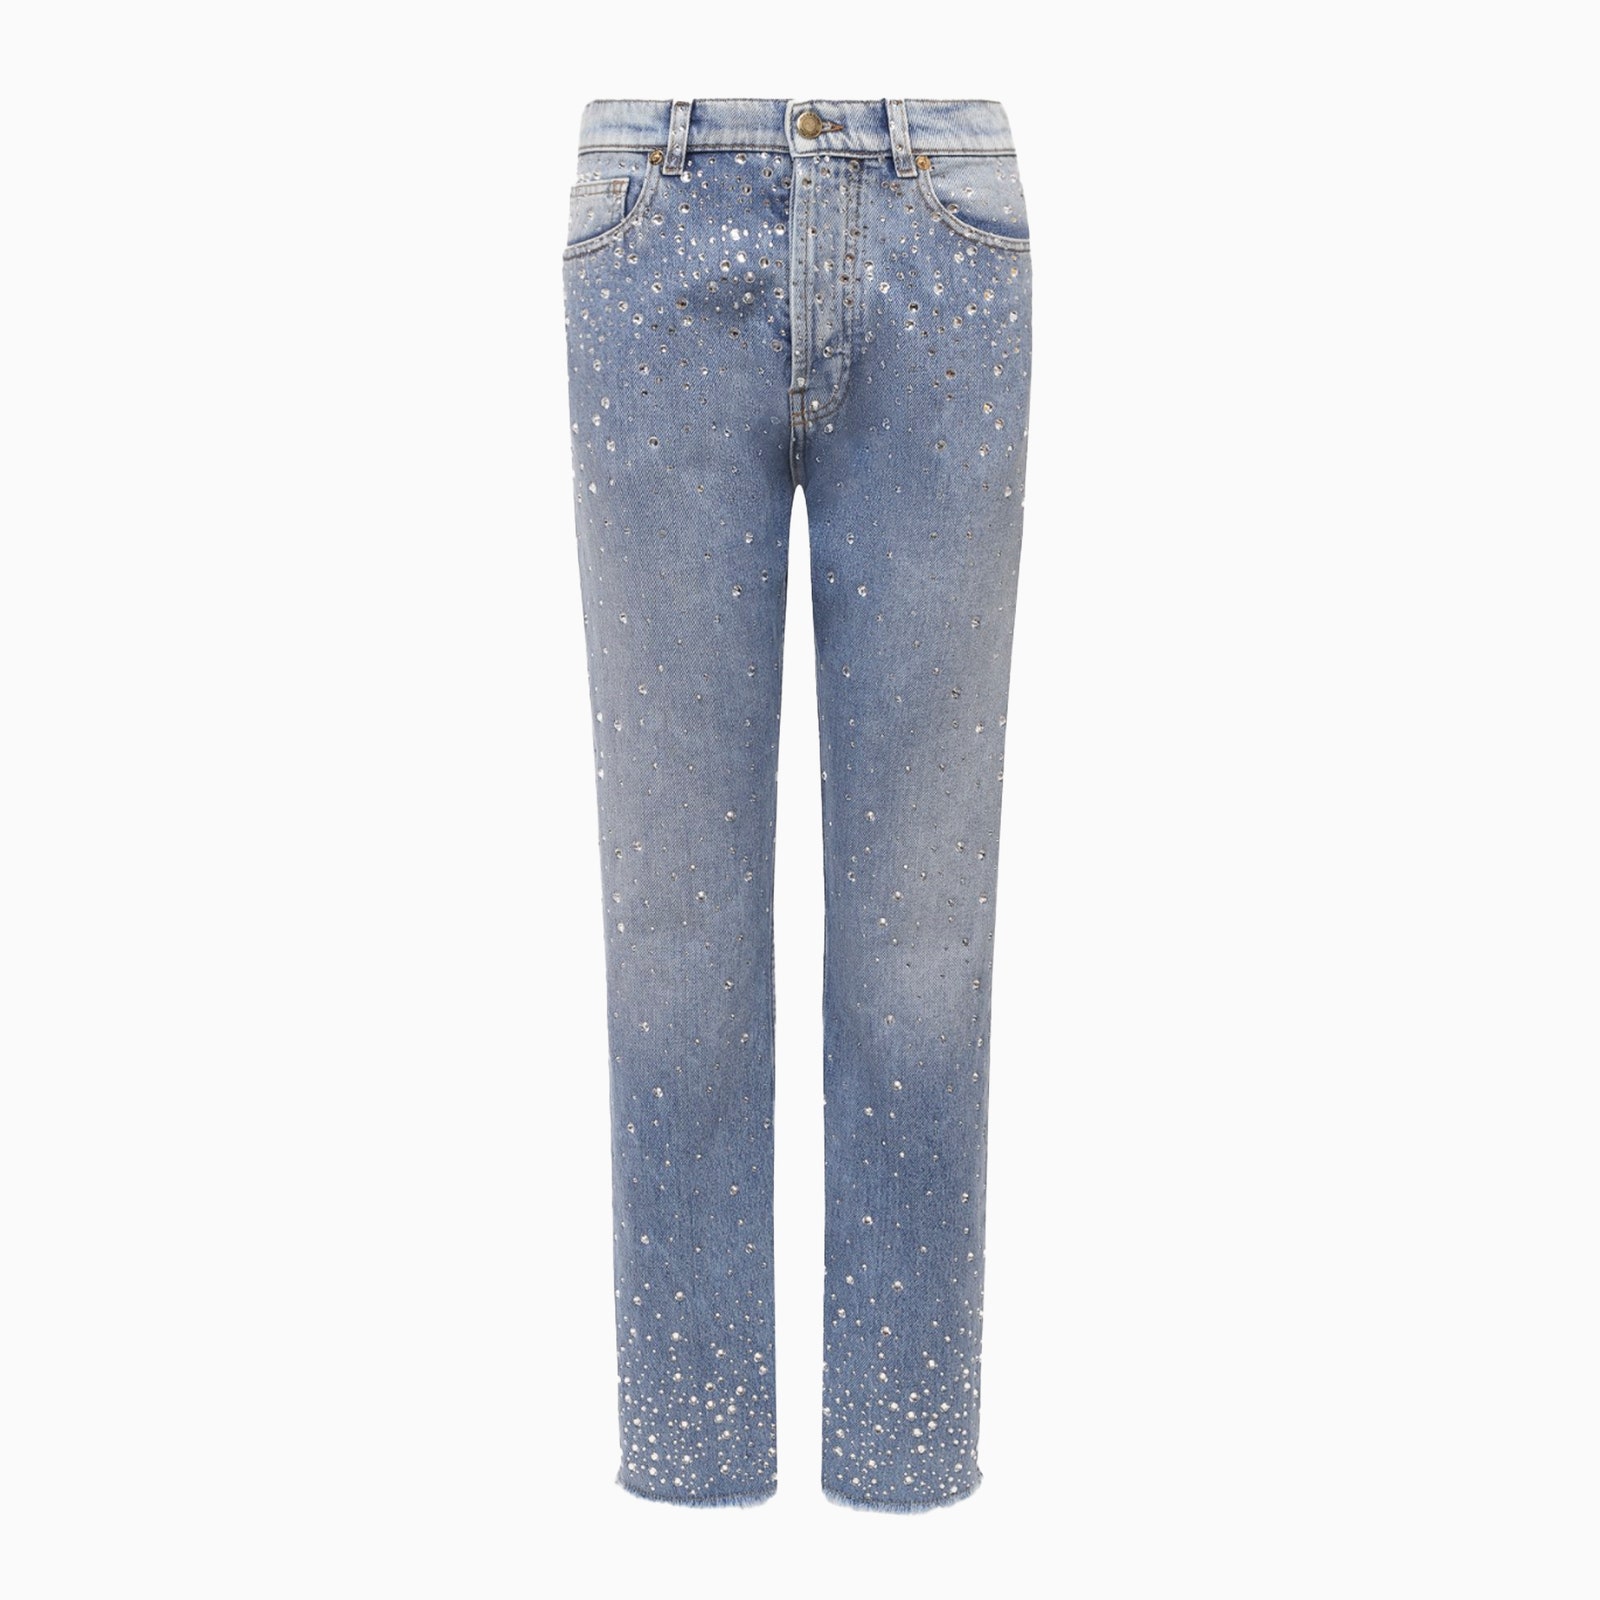 Нарядные джинсы — основа праздничного гардероба и ваше SOSспасение в новогоднюю ночь